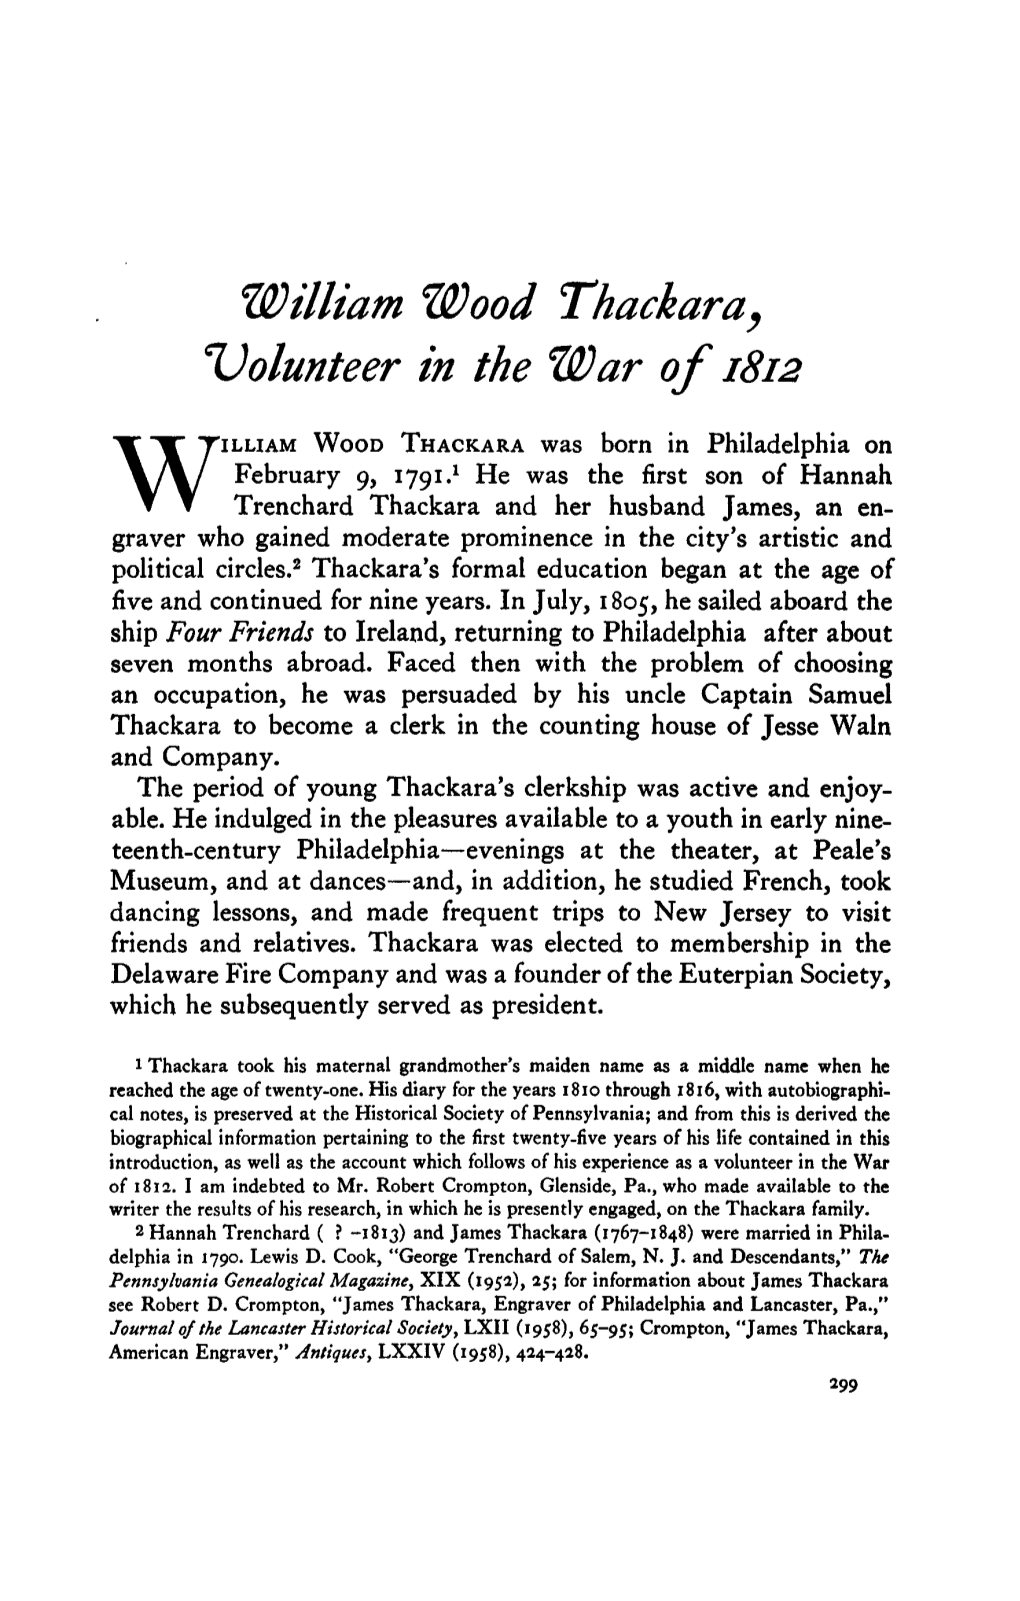 William Wood Thackara, Volunteer in the War of 1812